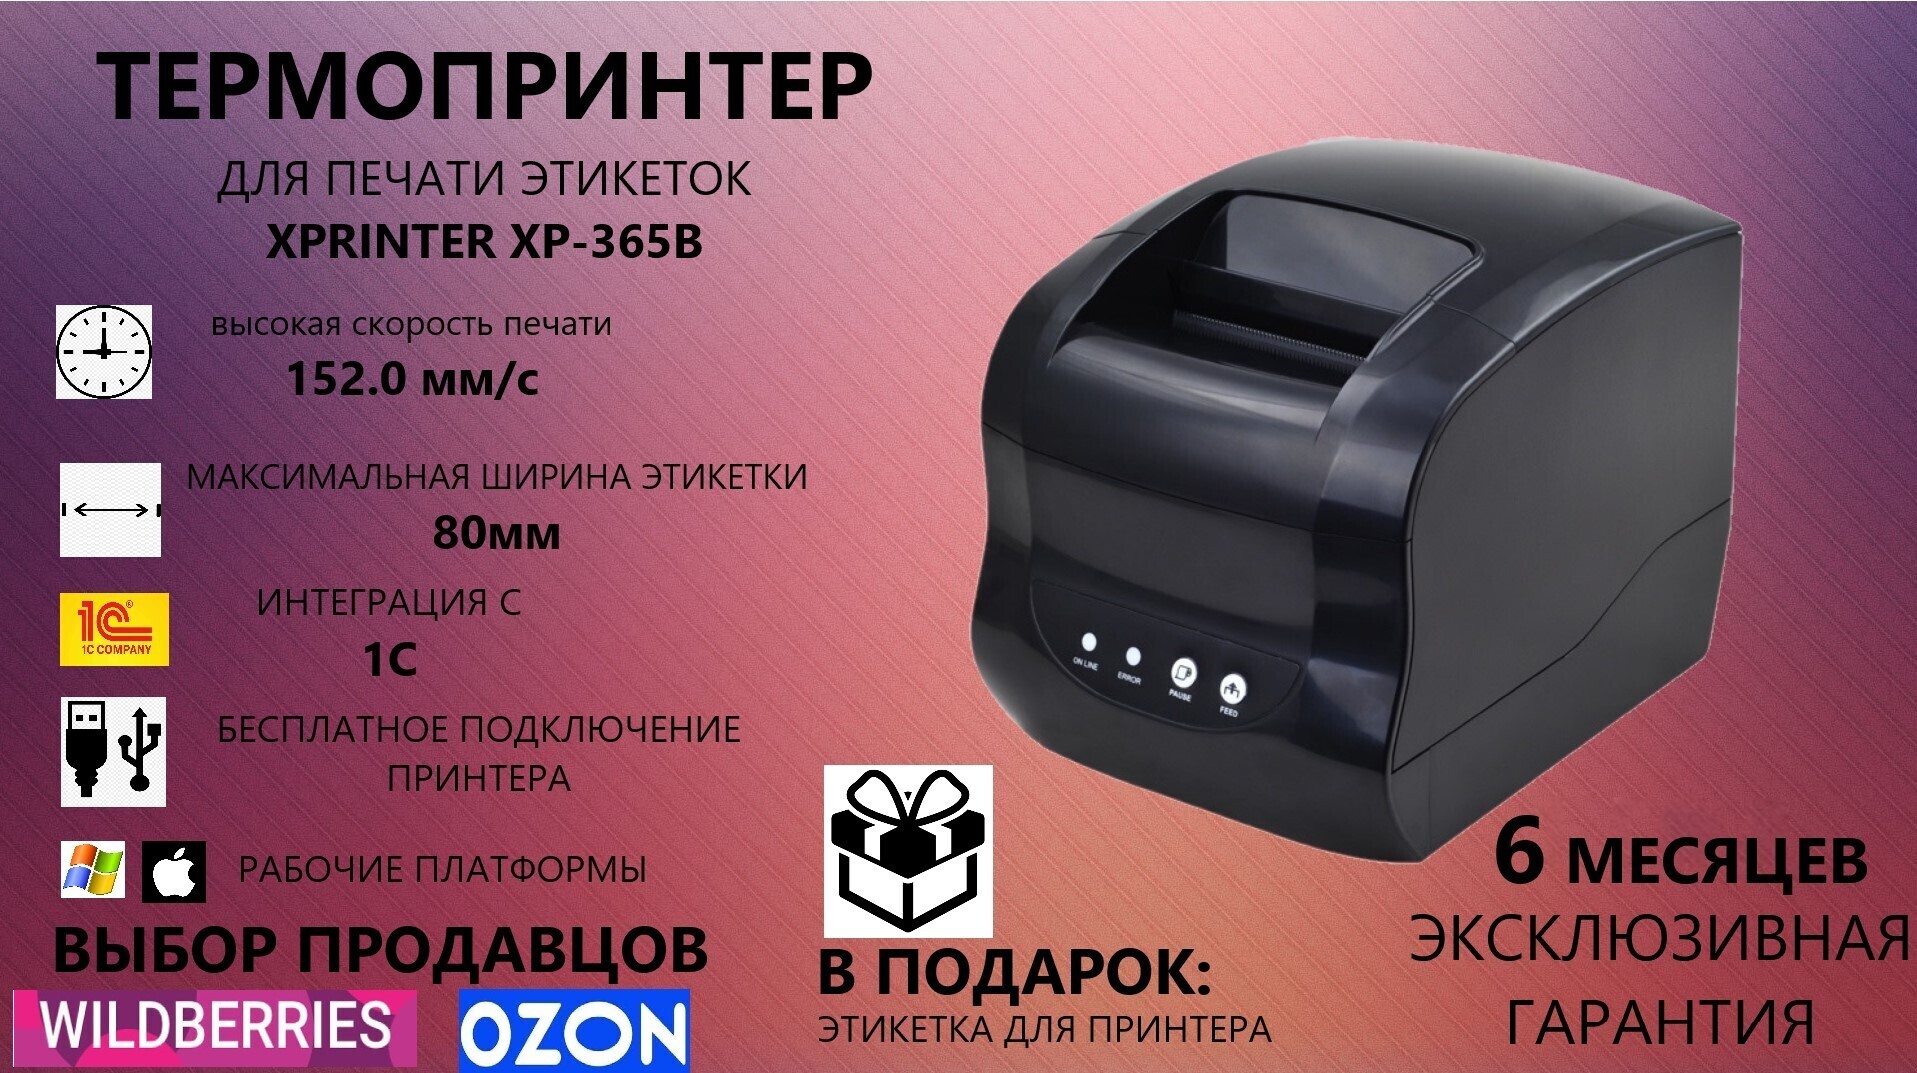 365b xprinter как печатать. Термопринтер Xprinter XP-365b печать. Xprinter 350b. Принтер этикеток Xprinter XP-365. Xprinter 365 для этикеток.